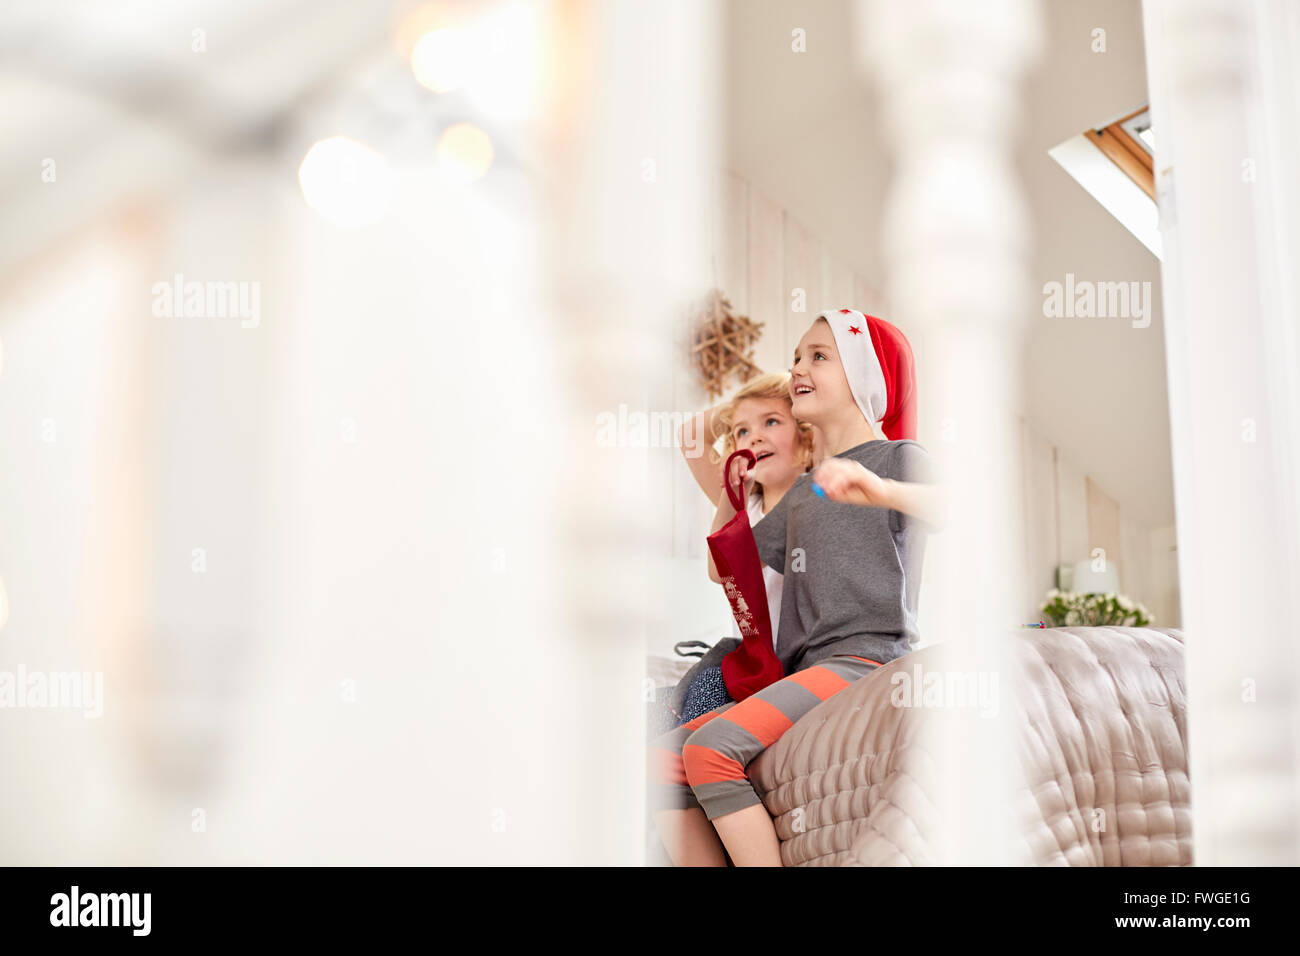 Zwei Kinder, einen jungen und Mädchen gesehen durch ein Schlafzimmer Tür, blickte aufgeregt: aufwachen am Weihnachtsmorgen. Stockfoto